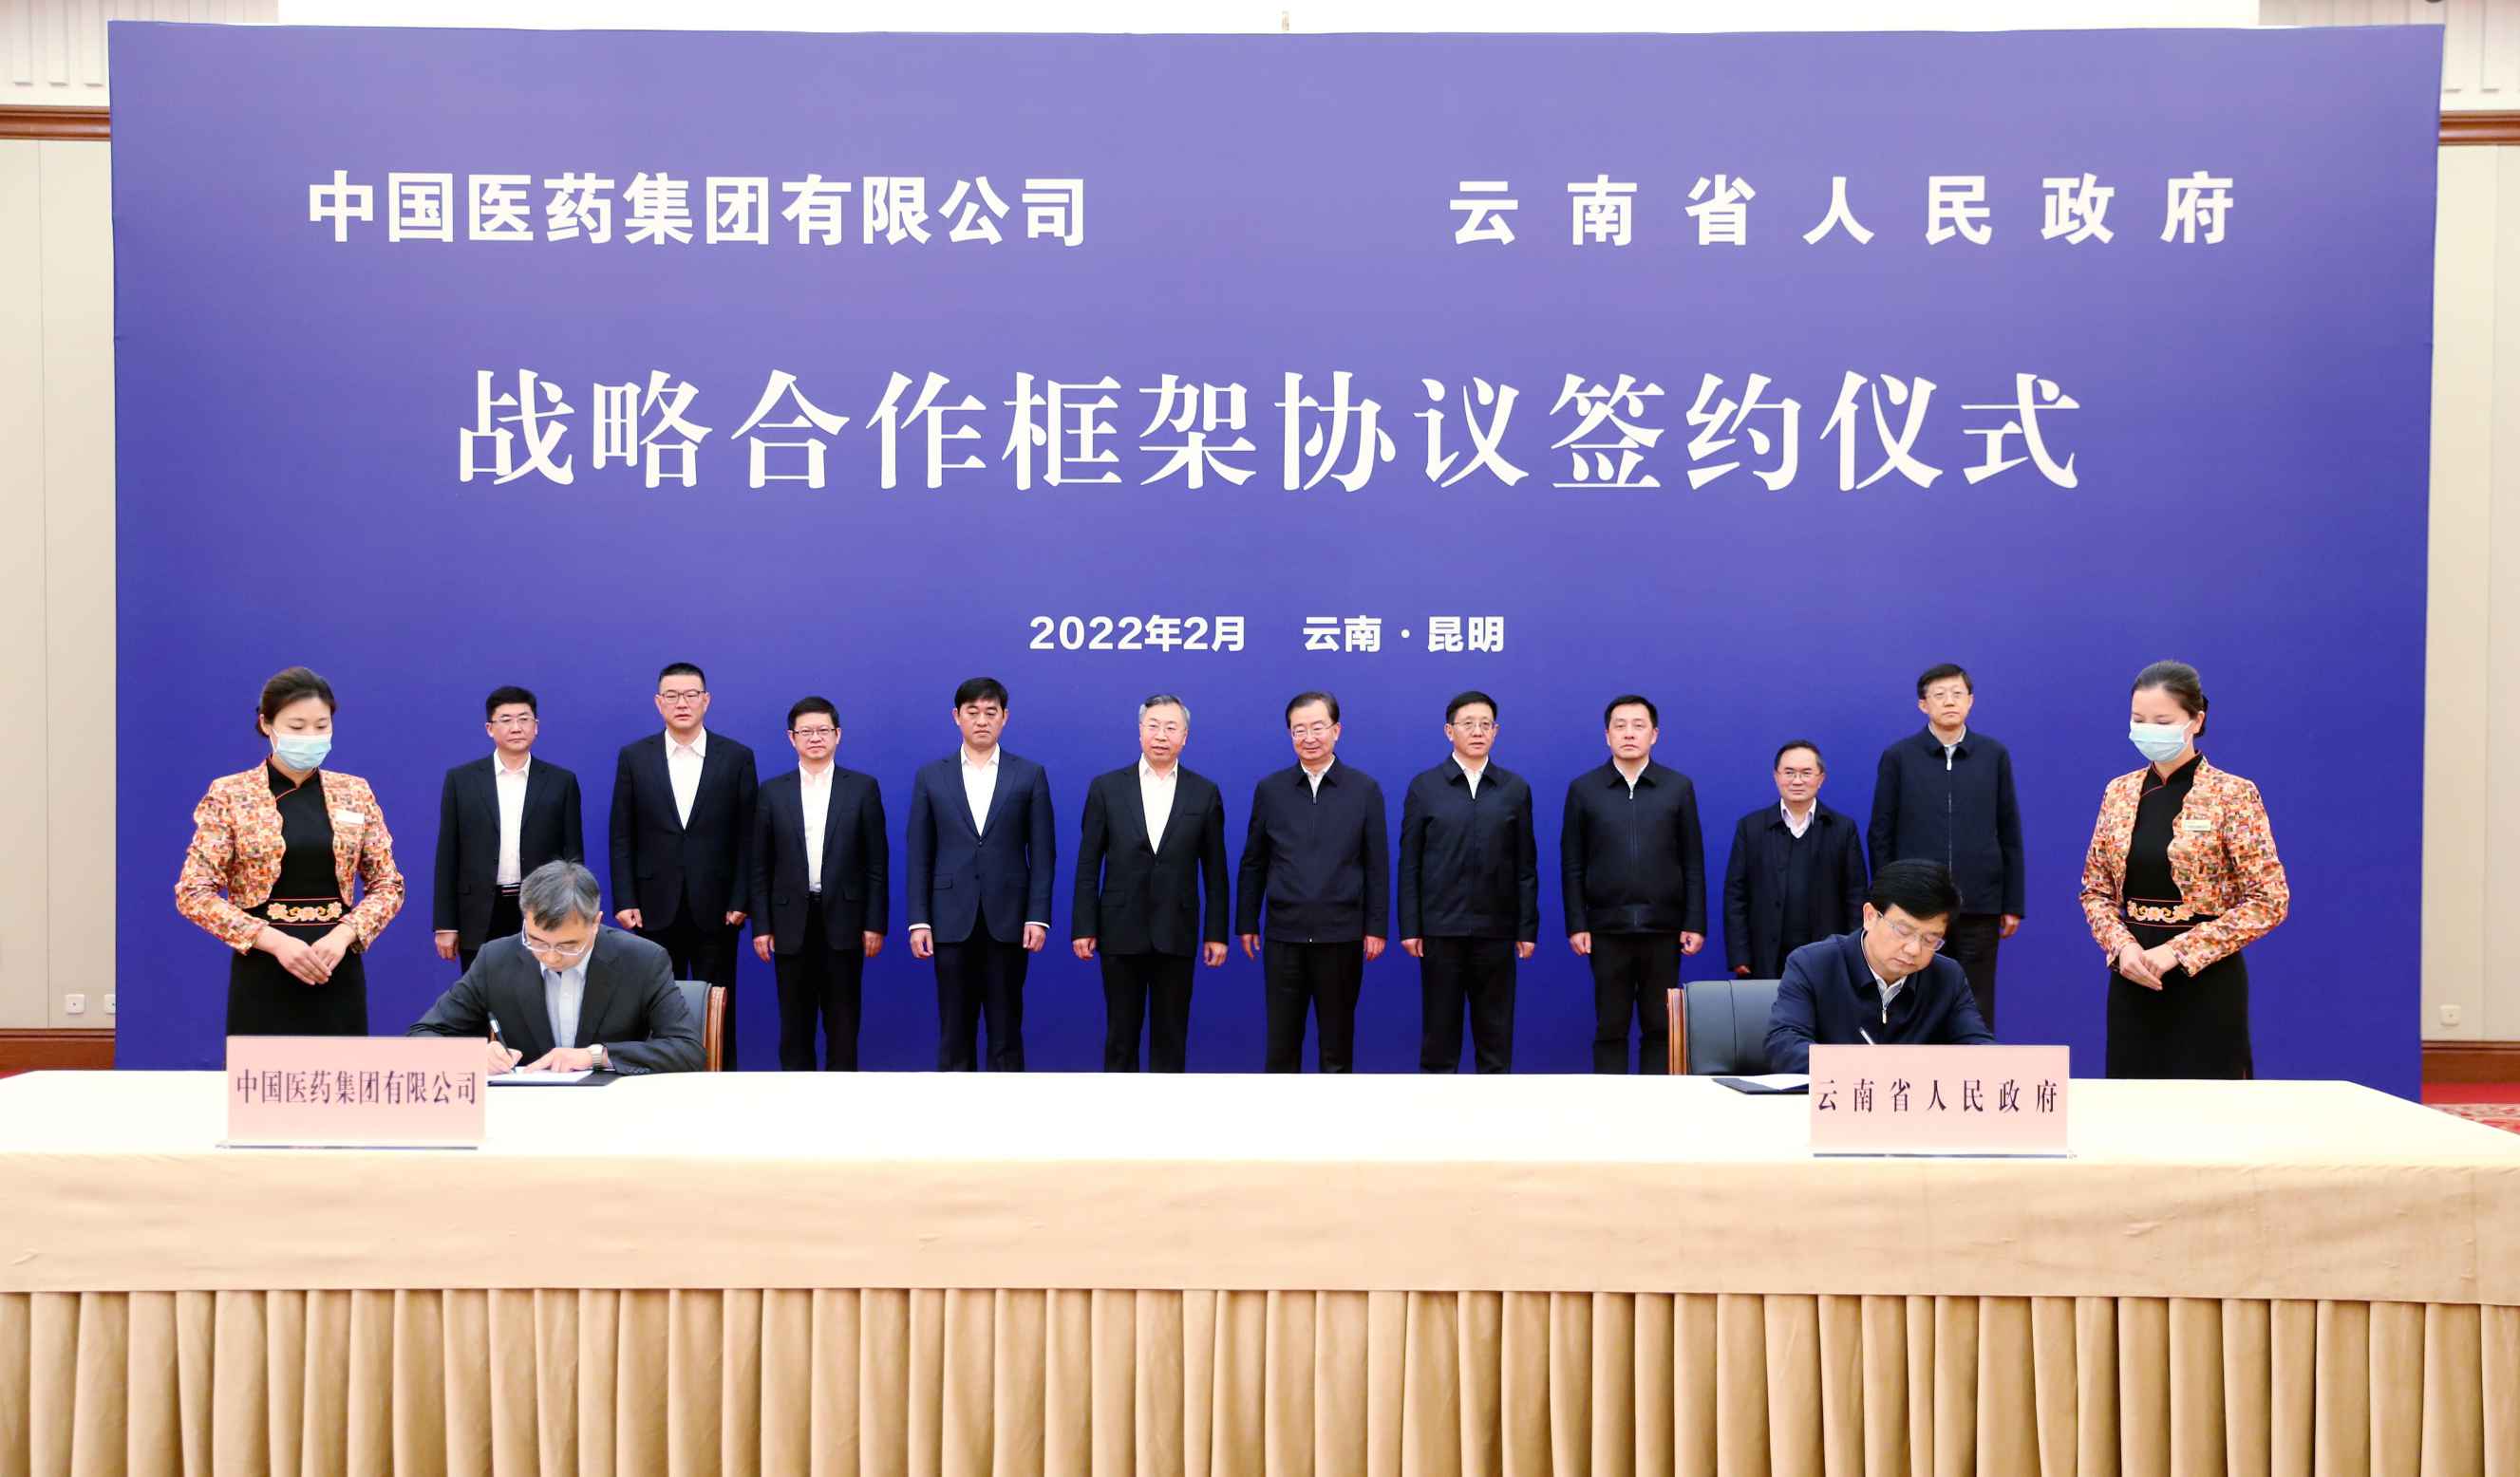 2022年2月27日，老哥俱乐部论坛集团与云南省人民政府签署战略合作框架协议